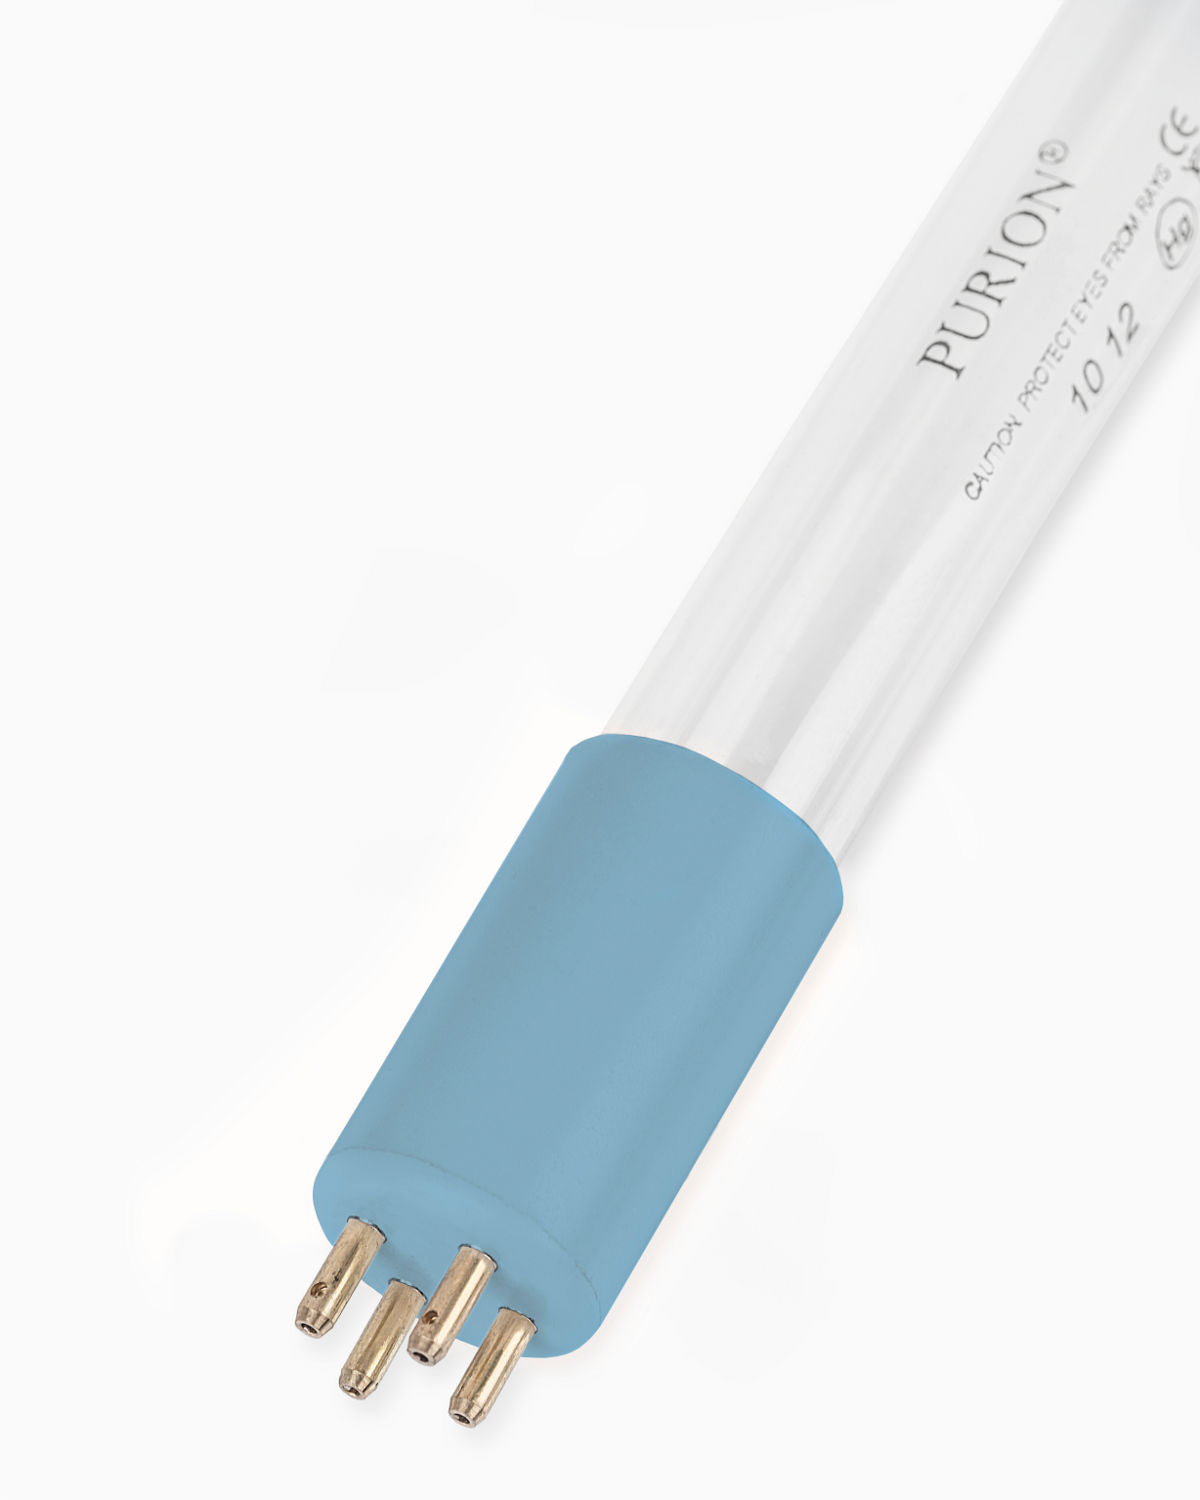 Eine blaue Lichtröhre, die die Trinkwasserqualität auf weißem Hintergrund verbessert.
Produktname: PURION IBC DN150 17W SPL BS von UV Concept GmbH.